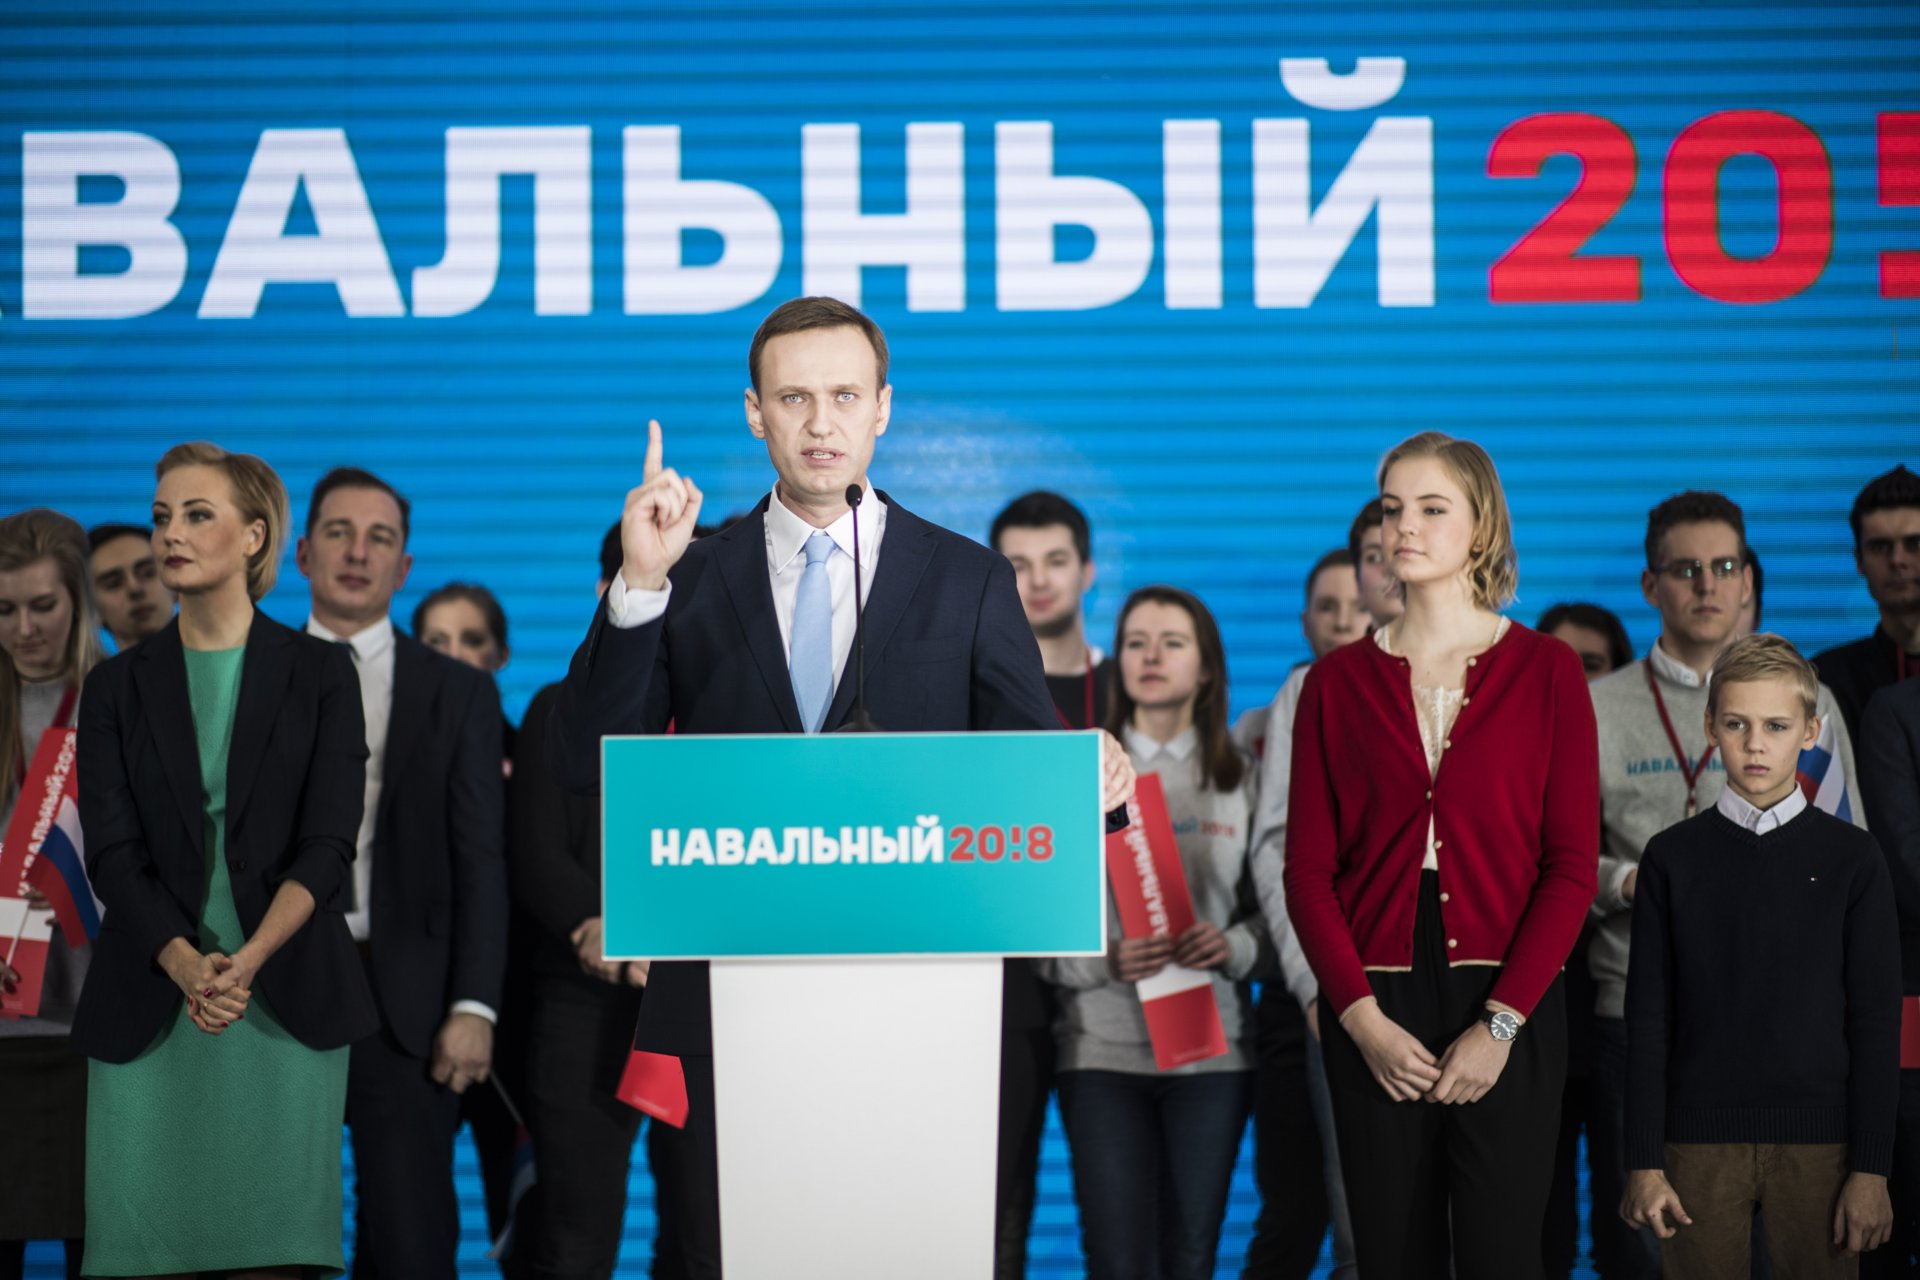 24 декември 2017 г. - Алексей Навални агитира в подкрепа на номинацията си за президент на Русия.